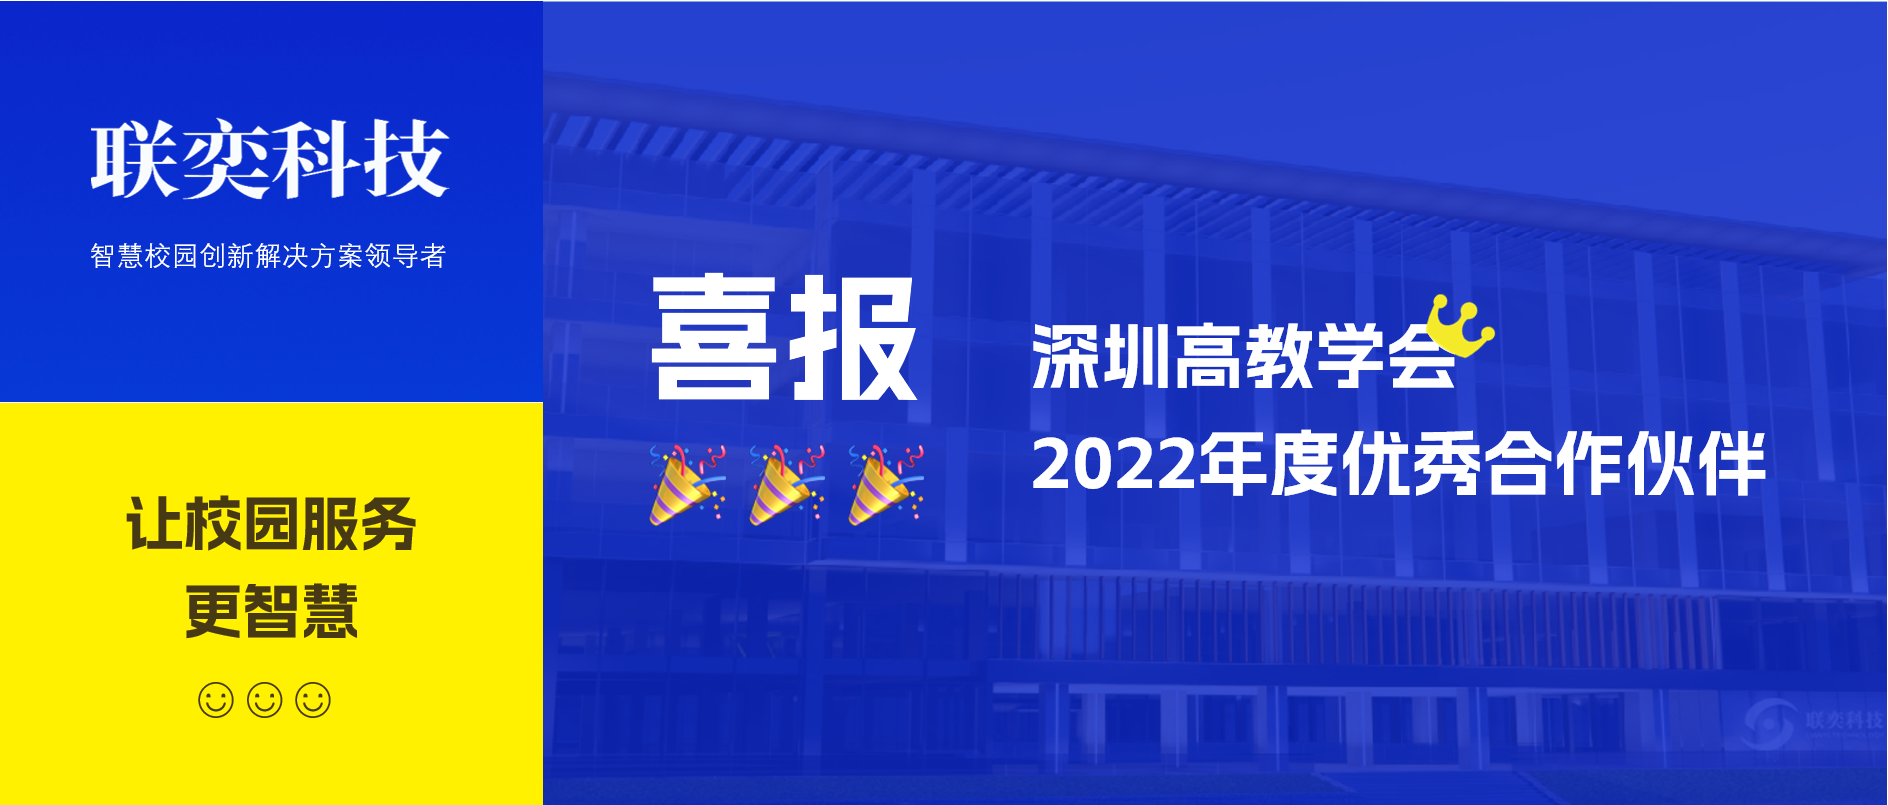 喜报 | 联奕科技获评深圳高教学会2022年度优秀合作伙伴